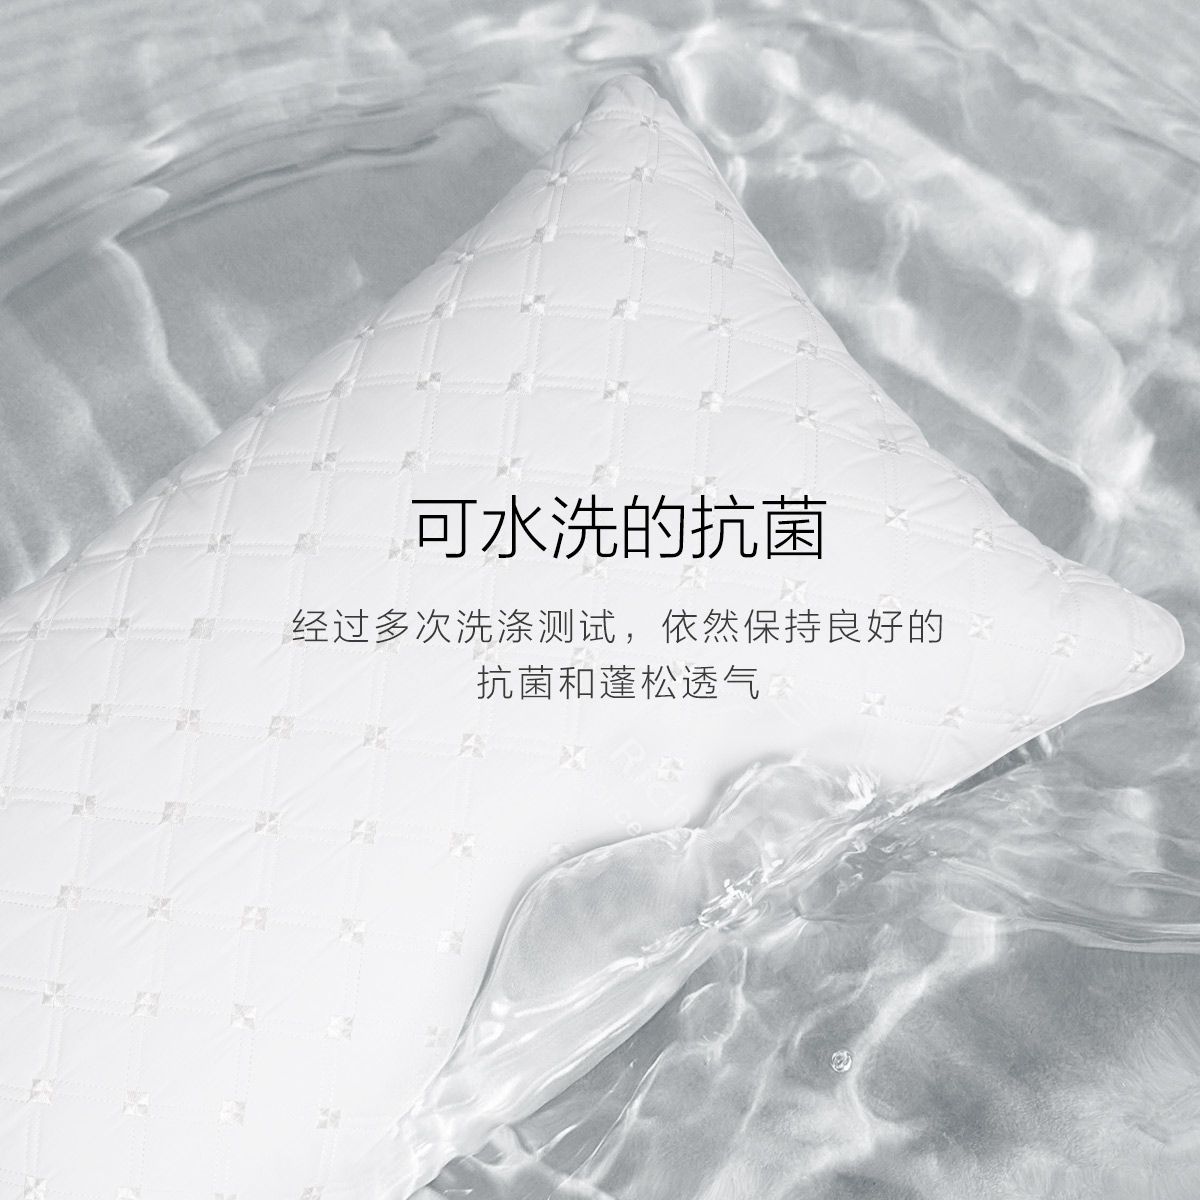 水星家纺臻柔抗菌防螨绗缝舒眠对枕床上用品